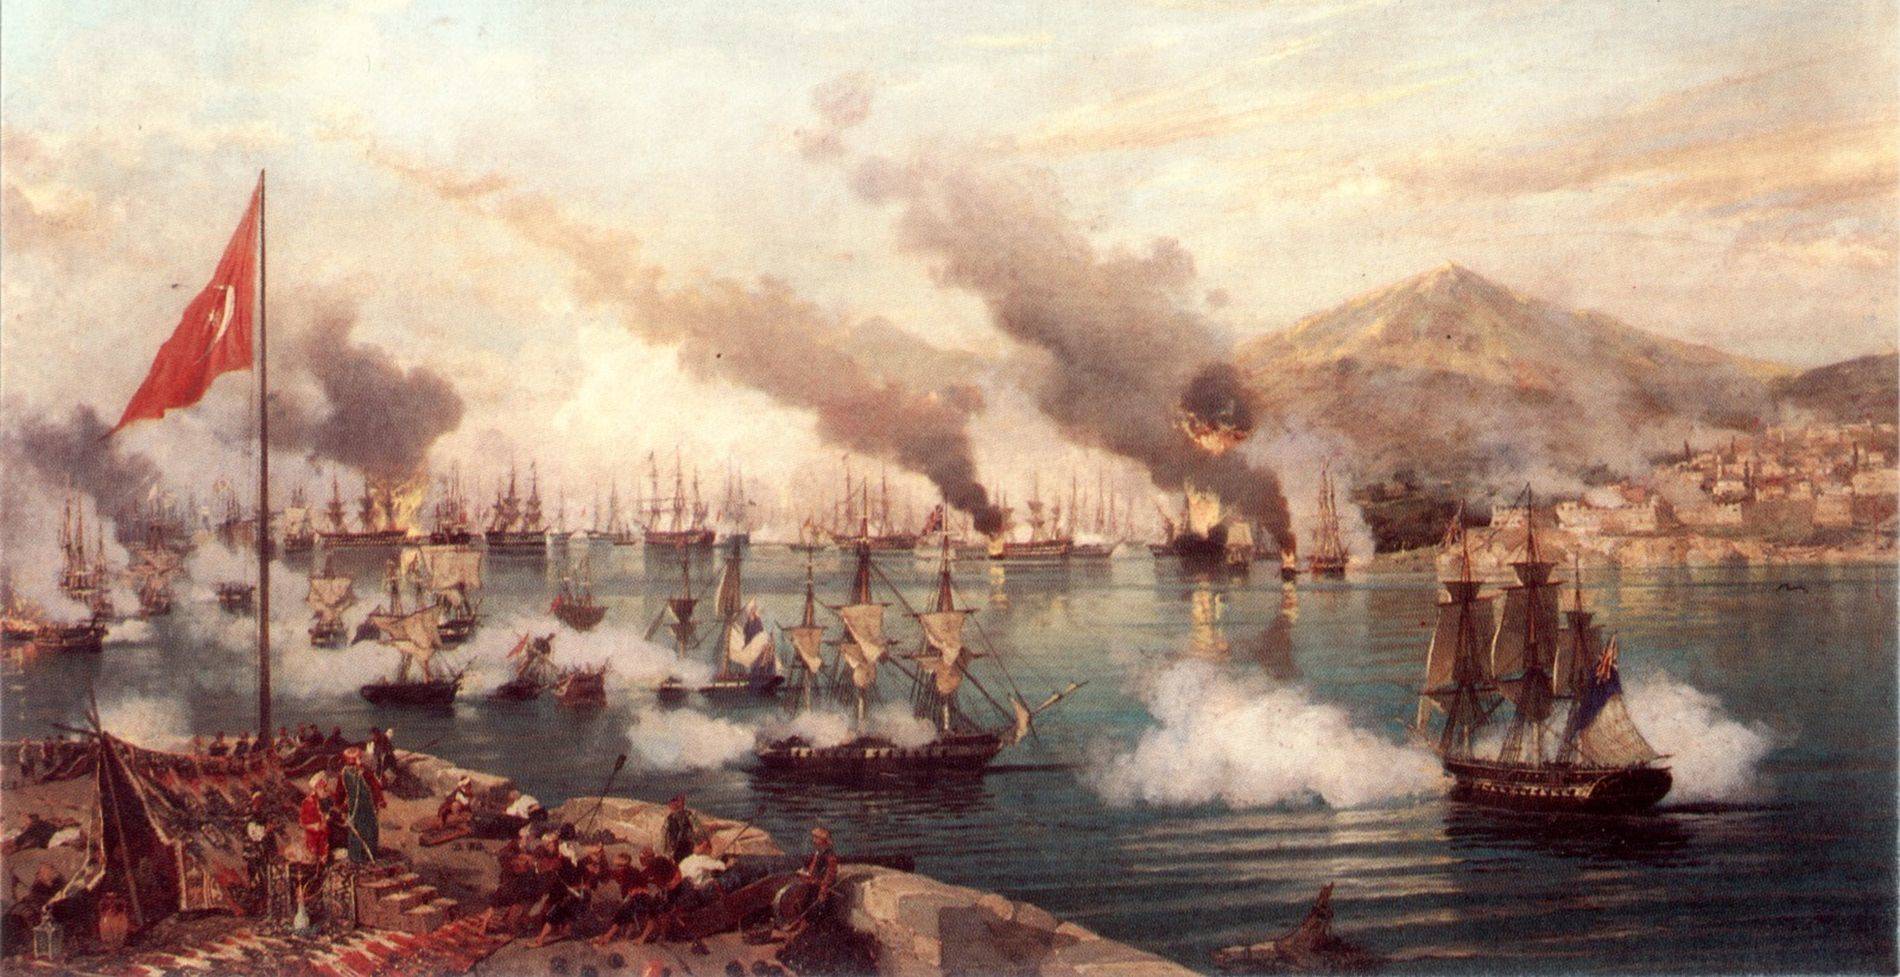 Η ναυμαχία που καθόρισε την τύχη της Επανάστασης του 1821